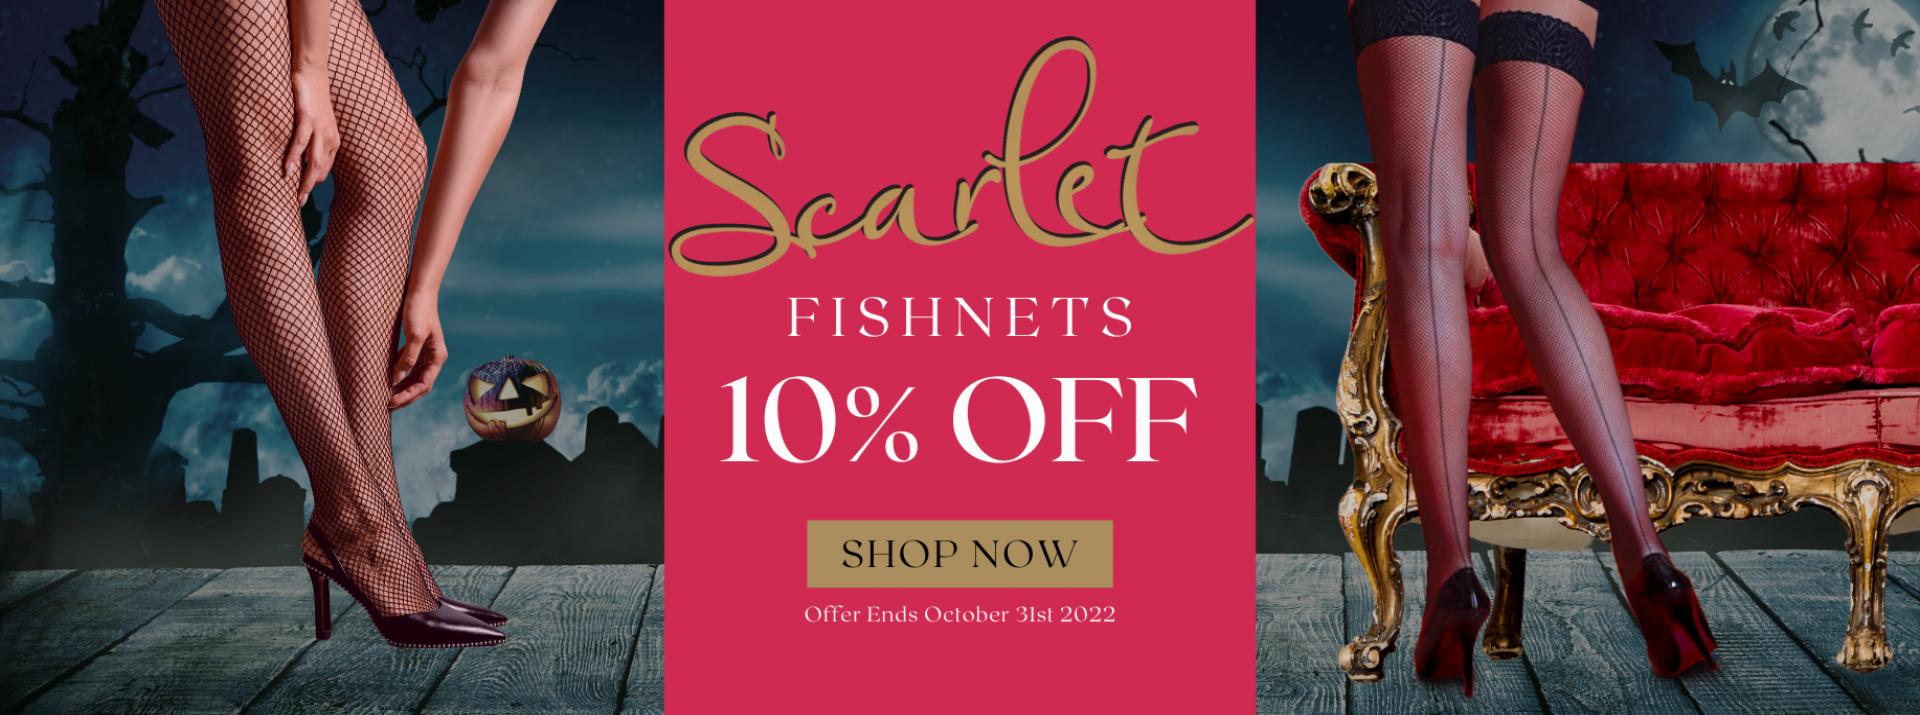 10% Scarlet Fishnets